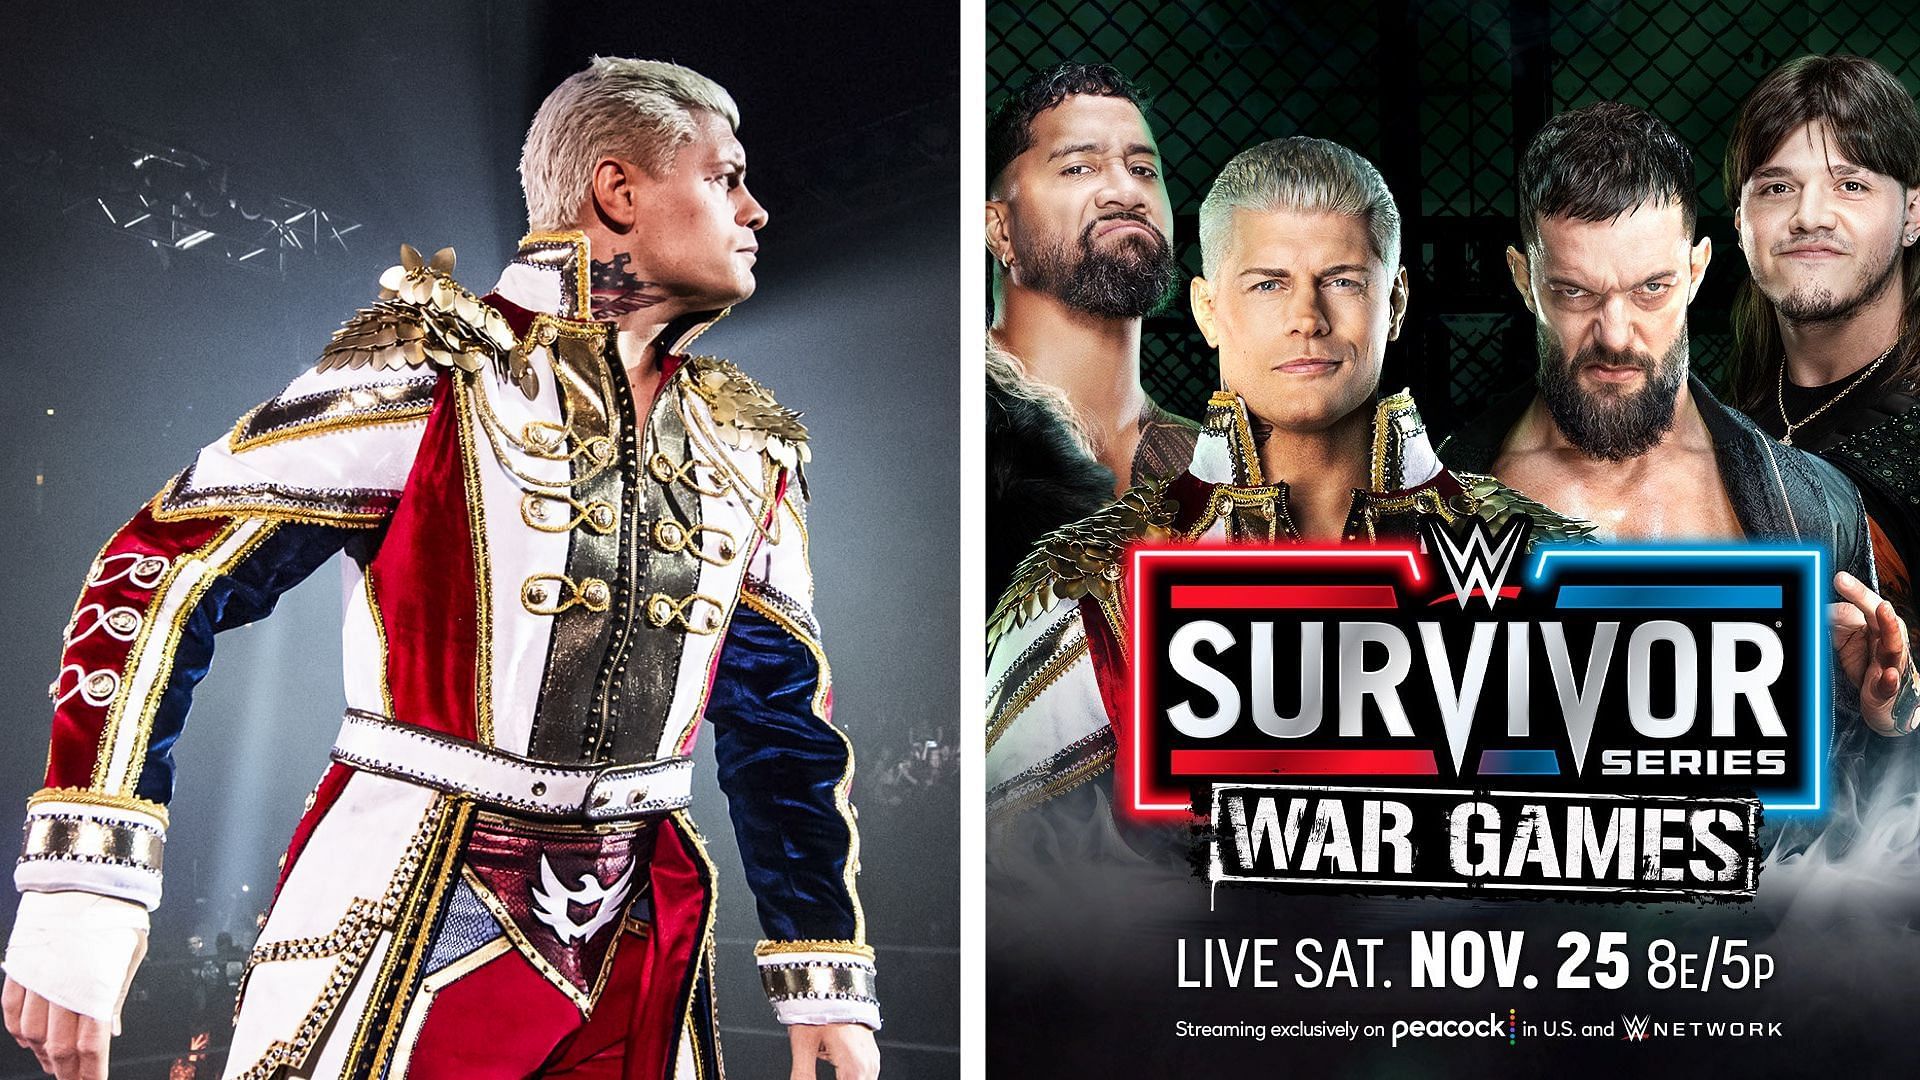 Cody Rhodes will make history at WWE Survivor Series WarGames